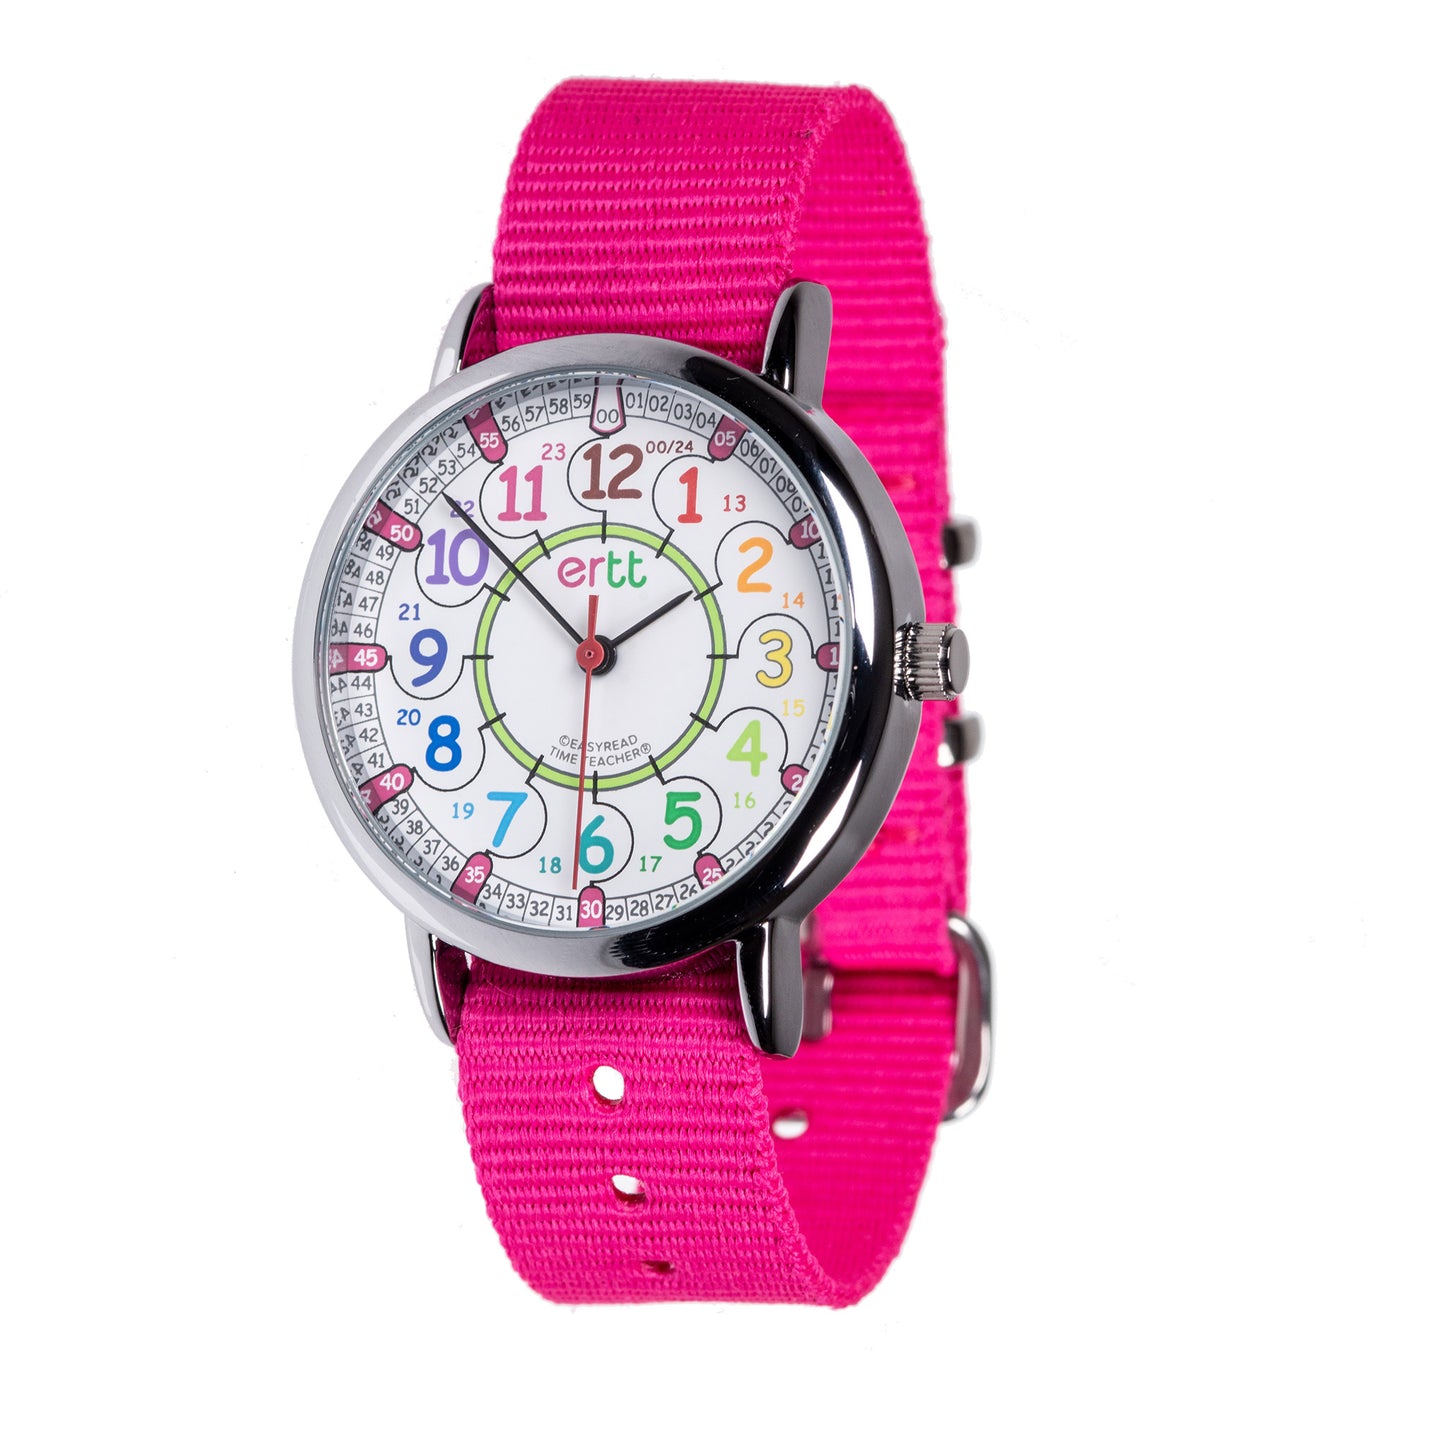 ERTT Rainbow Pink 12/24 Hr Watch (7791786787015)